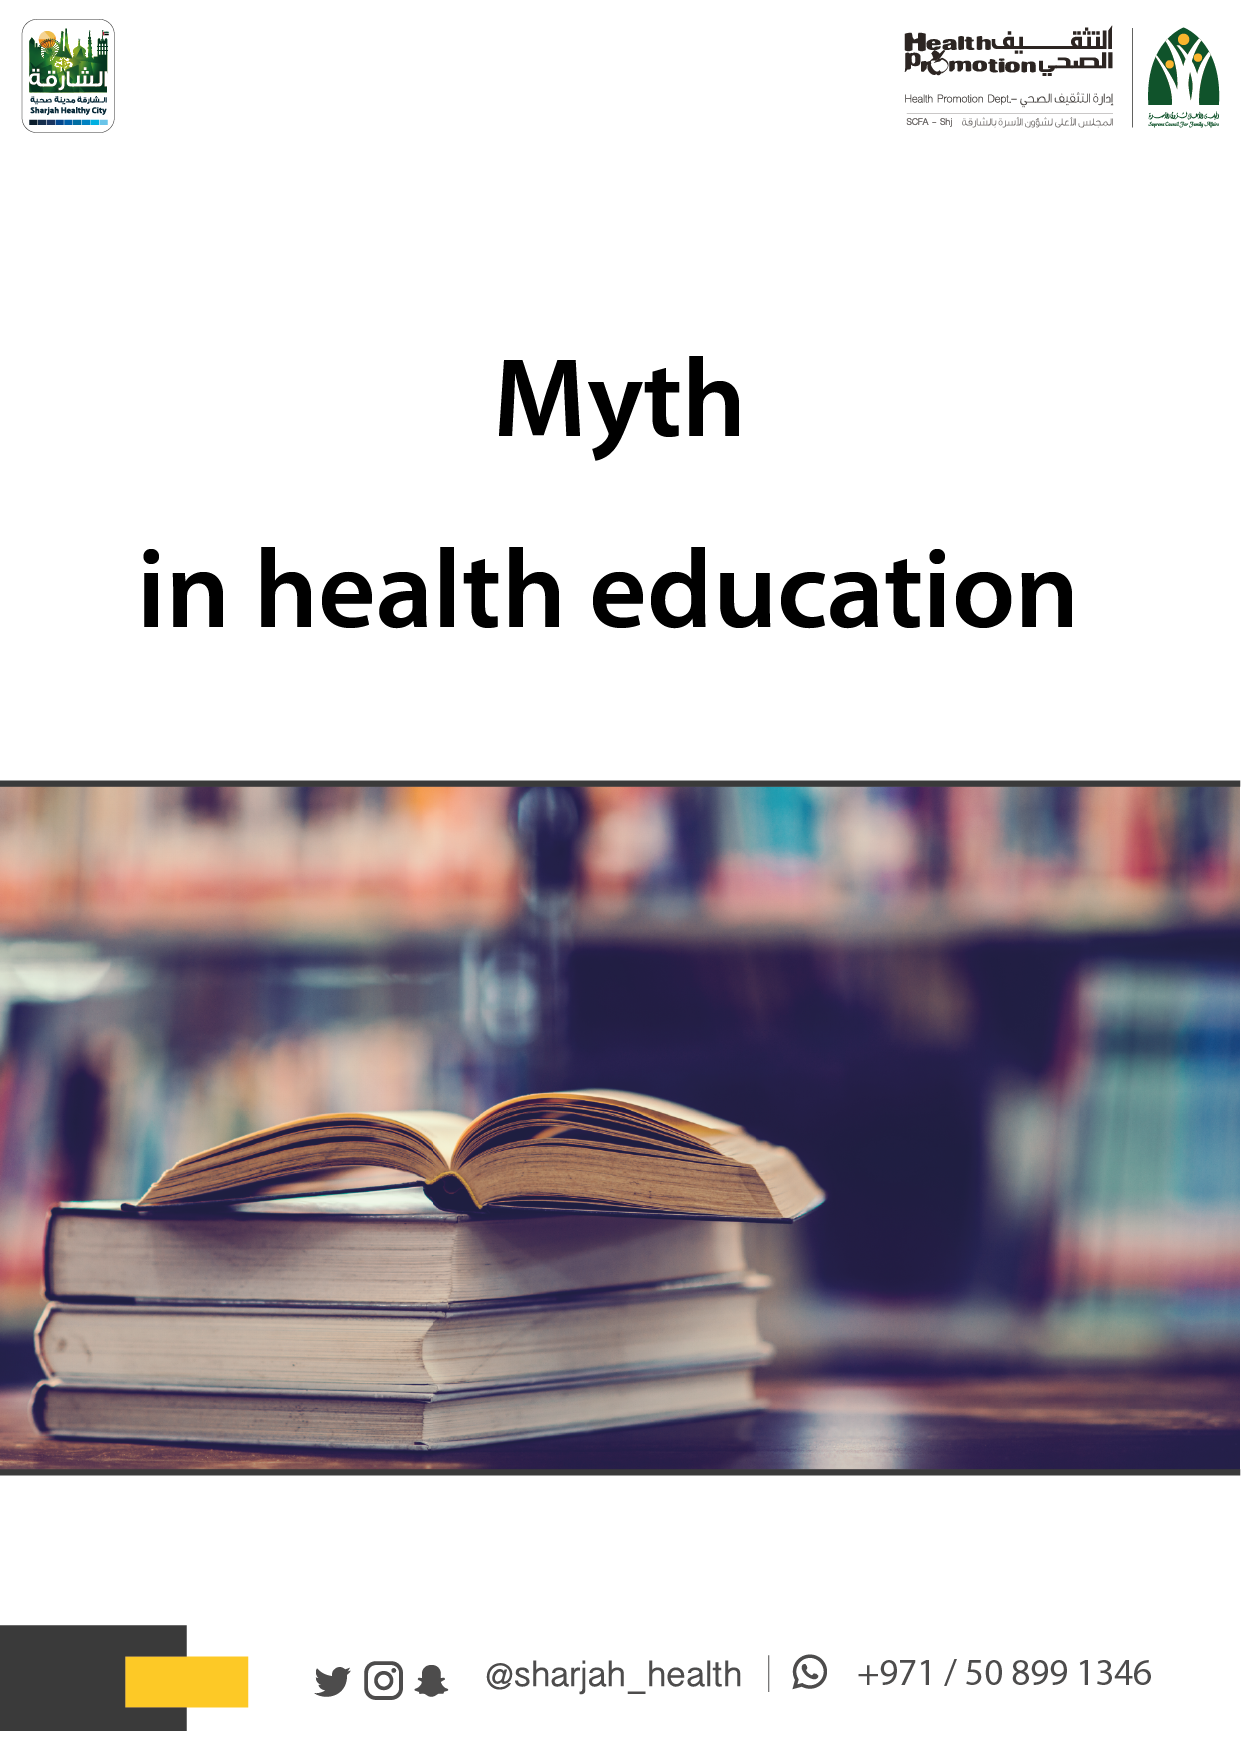 Myth in health education